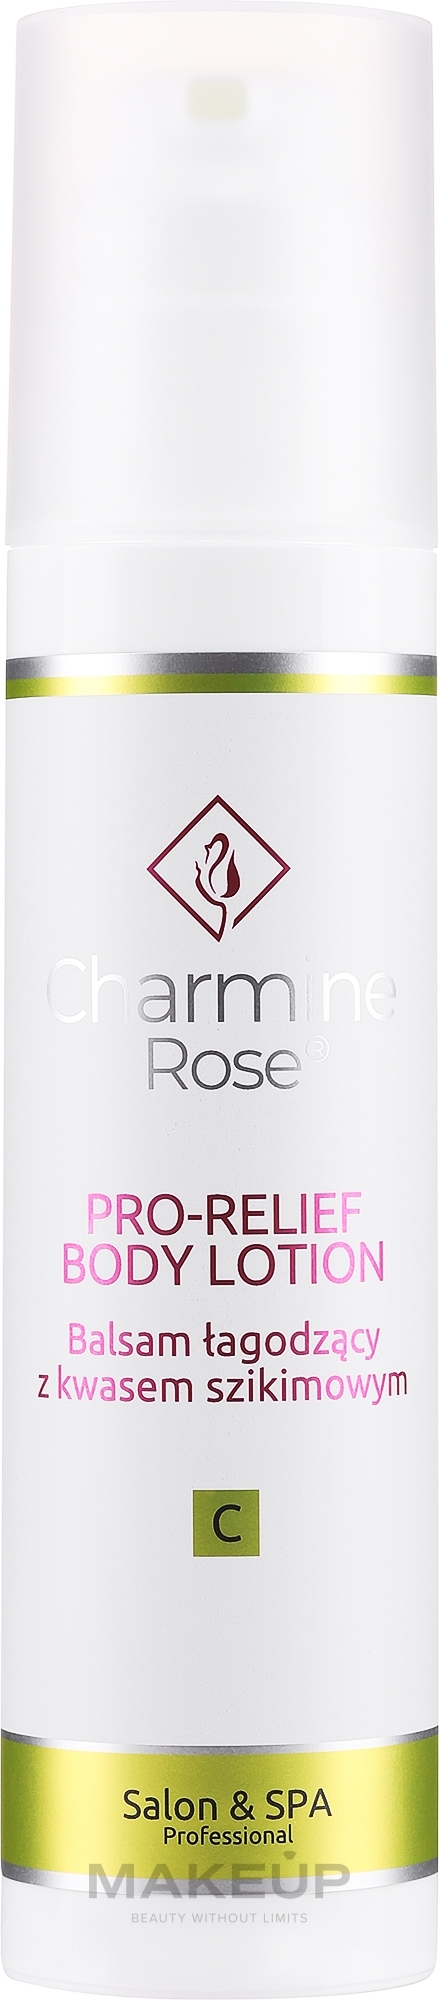 Заспокійливий бальзам для тіла - Charmine Rose Pro-Relief Body Lotion — фото 200ml